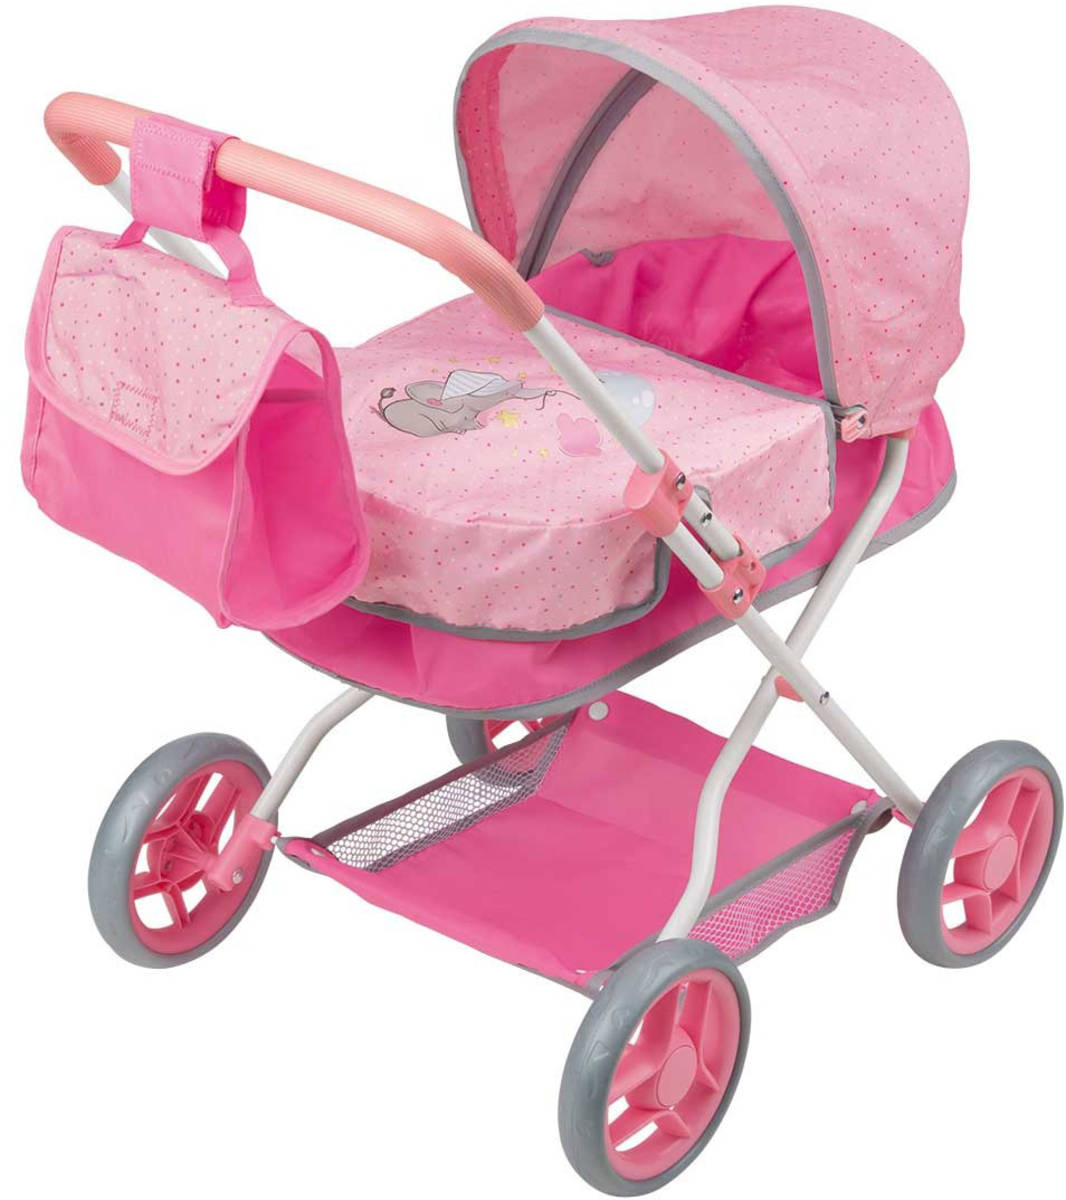 Kočárek Playtive hluboký růžový pro panenku miminko set s přebalovací taškou